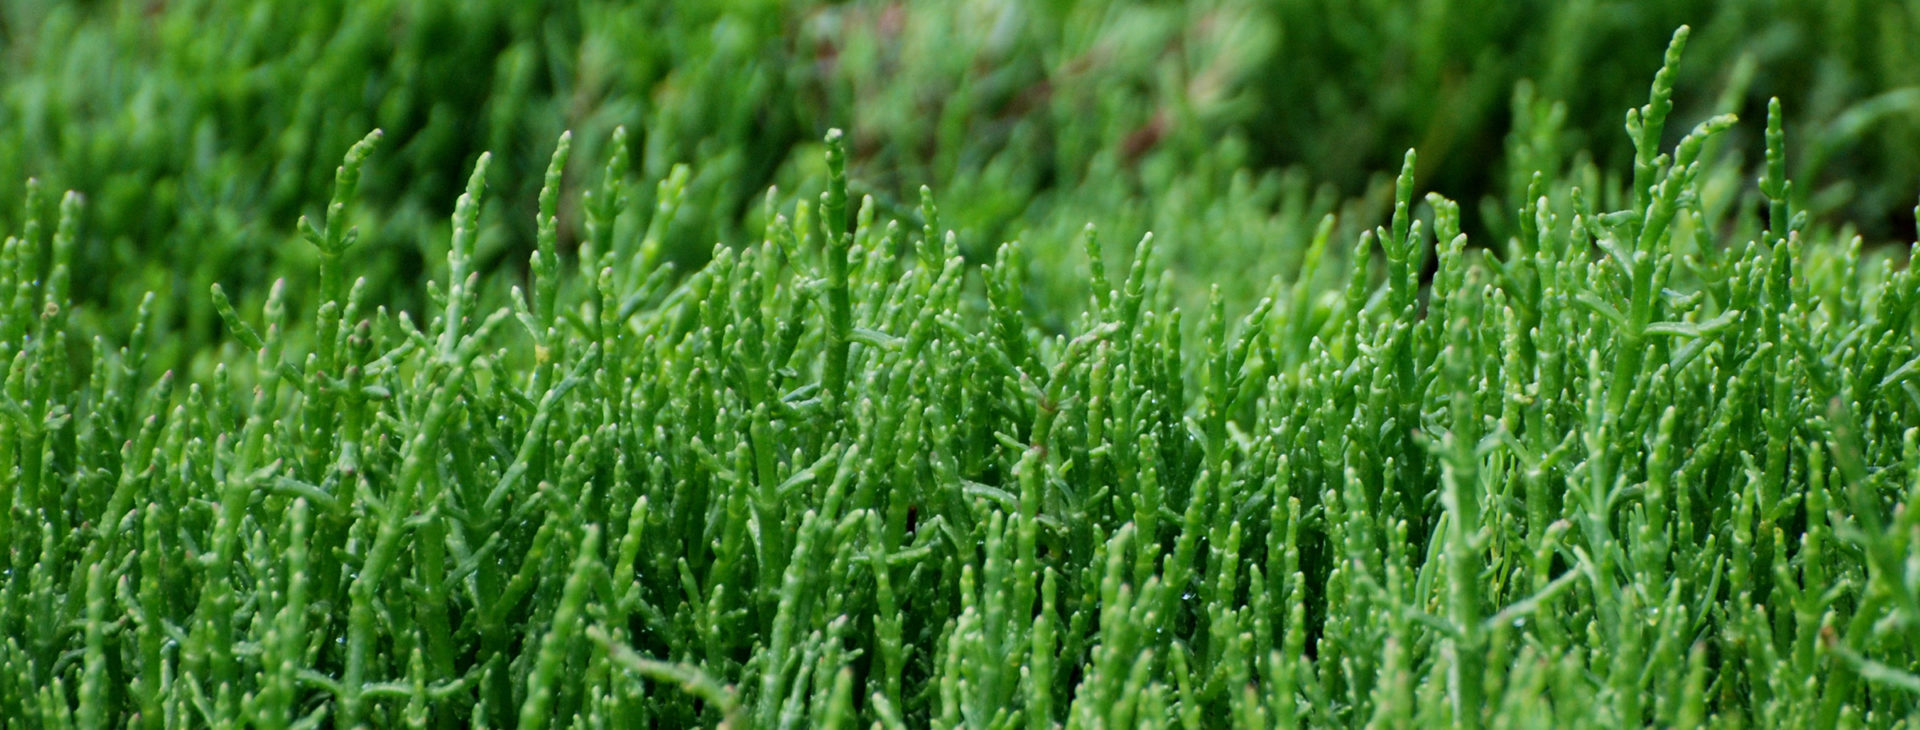 Zeekraal is een van de bekendere 'halofyten' ofwel zoutminnende planten